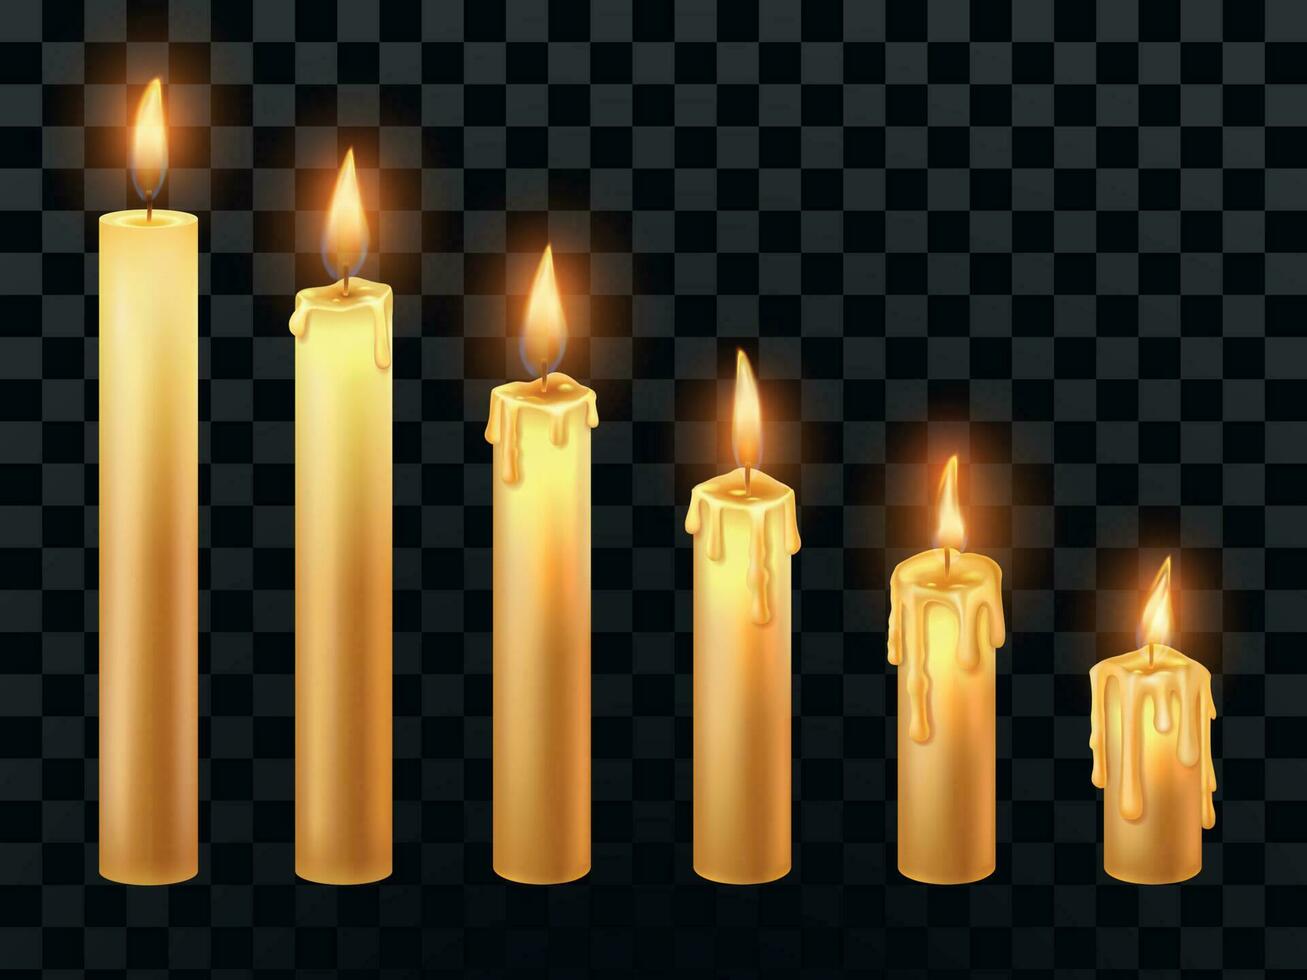 brinnande ljus. bränna kyrka ljus, vax brand och xmas ljus isolerat realistisk vektor objekt uppsättning